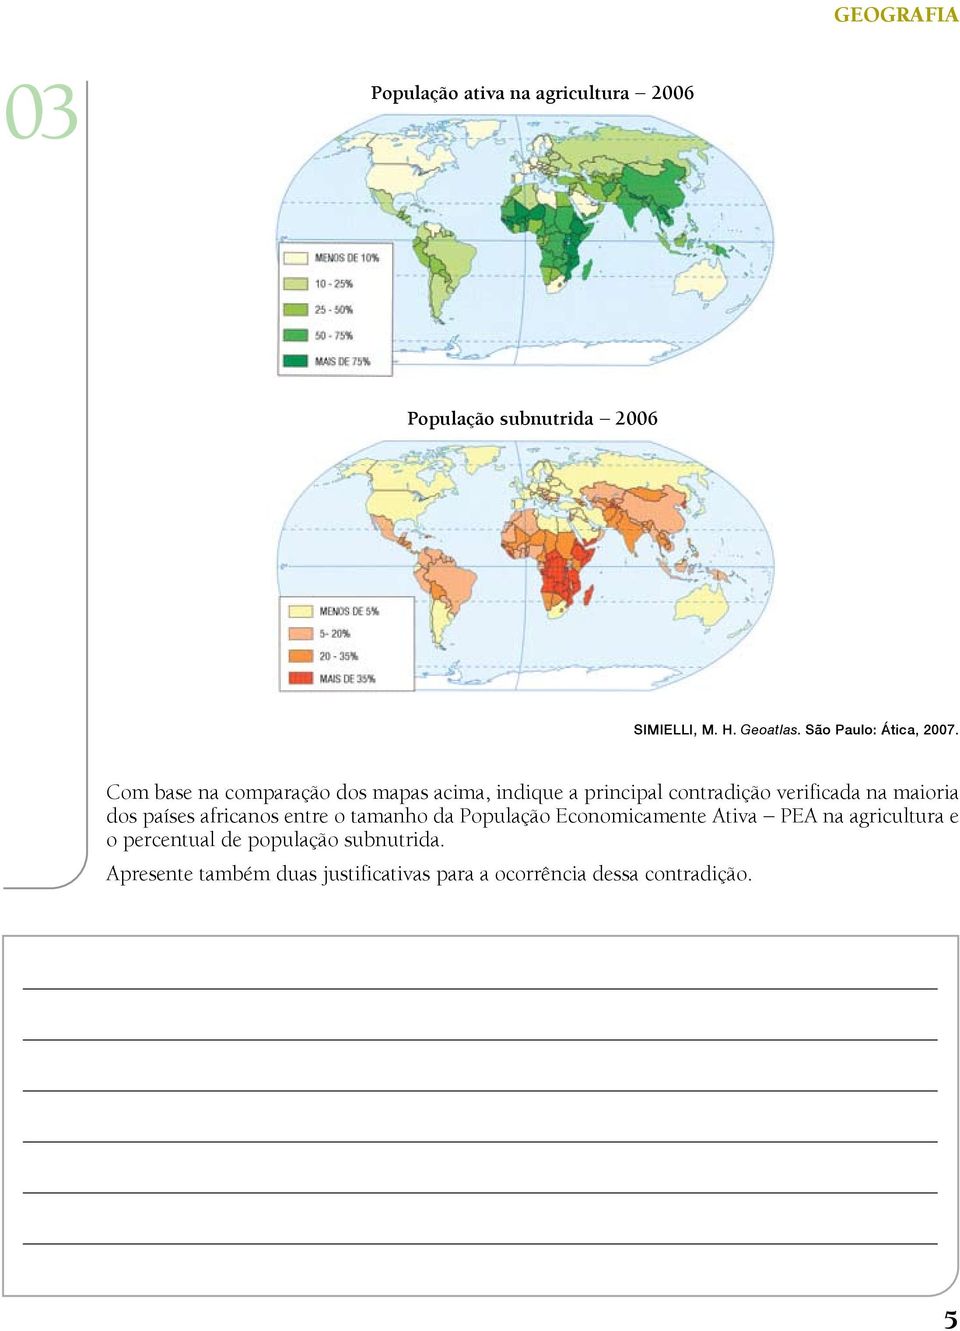 Com base na comparação dos mapas acima, indique a principal contradição verificada na maioria dos países